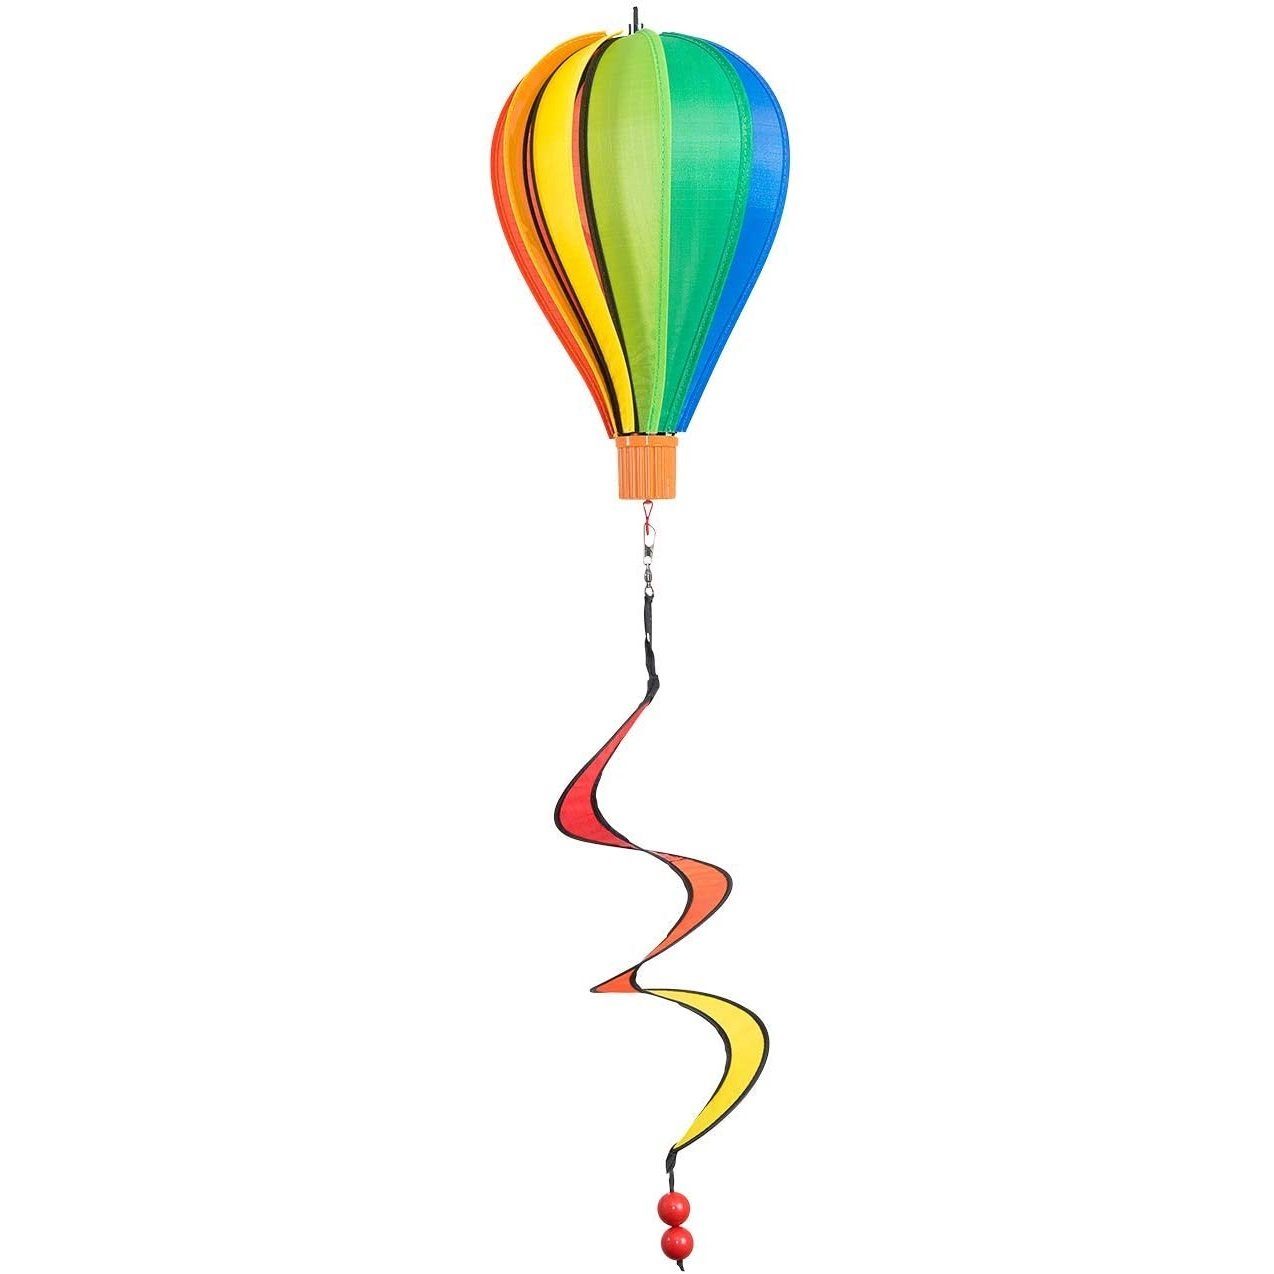 Micro - Balloon Windspiel Rainbow CiM Windspiel